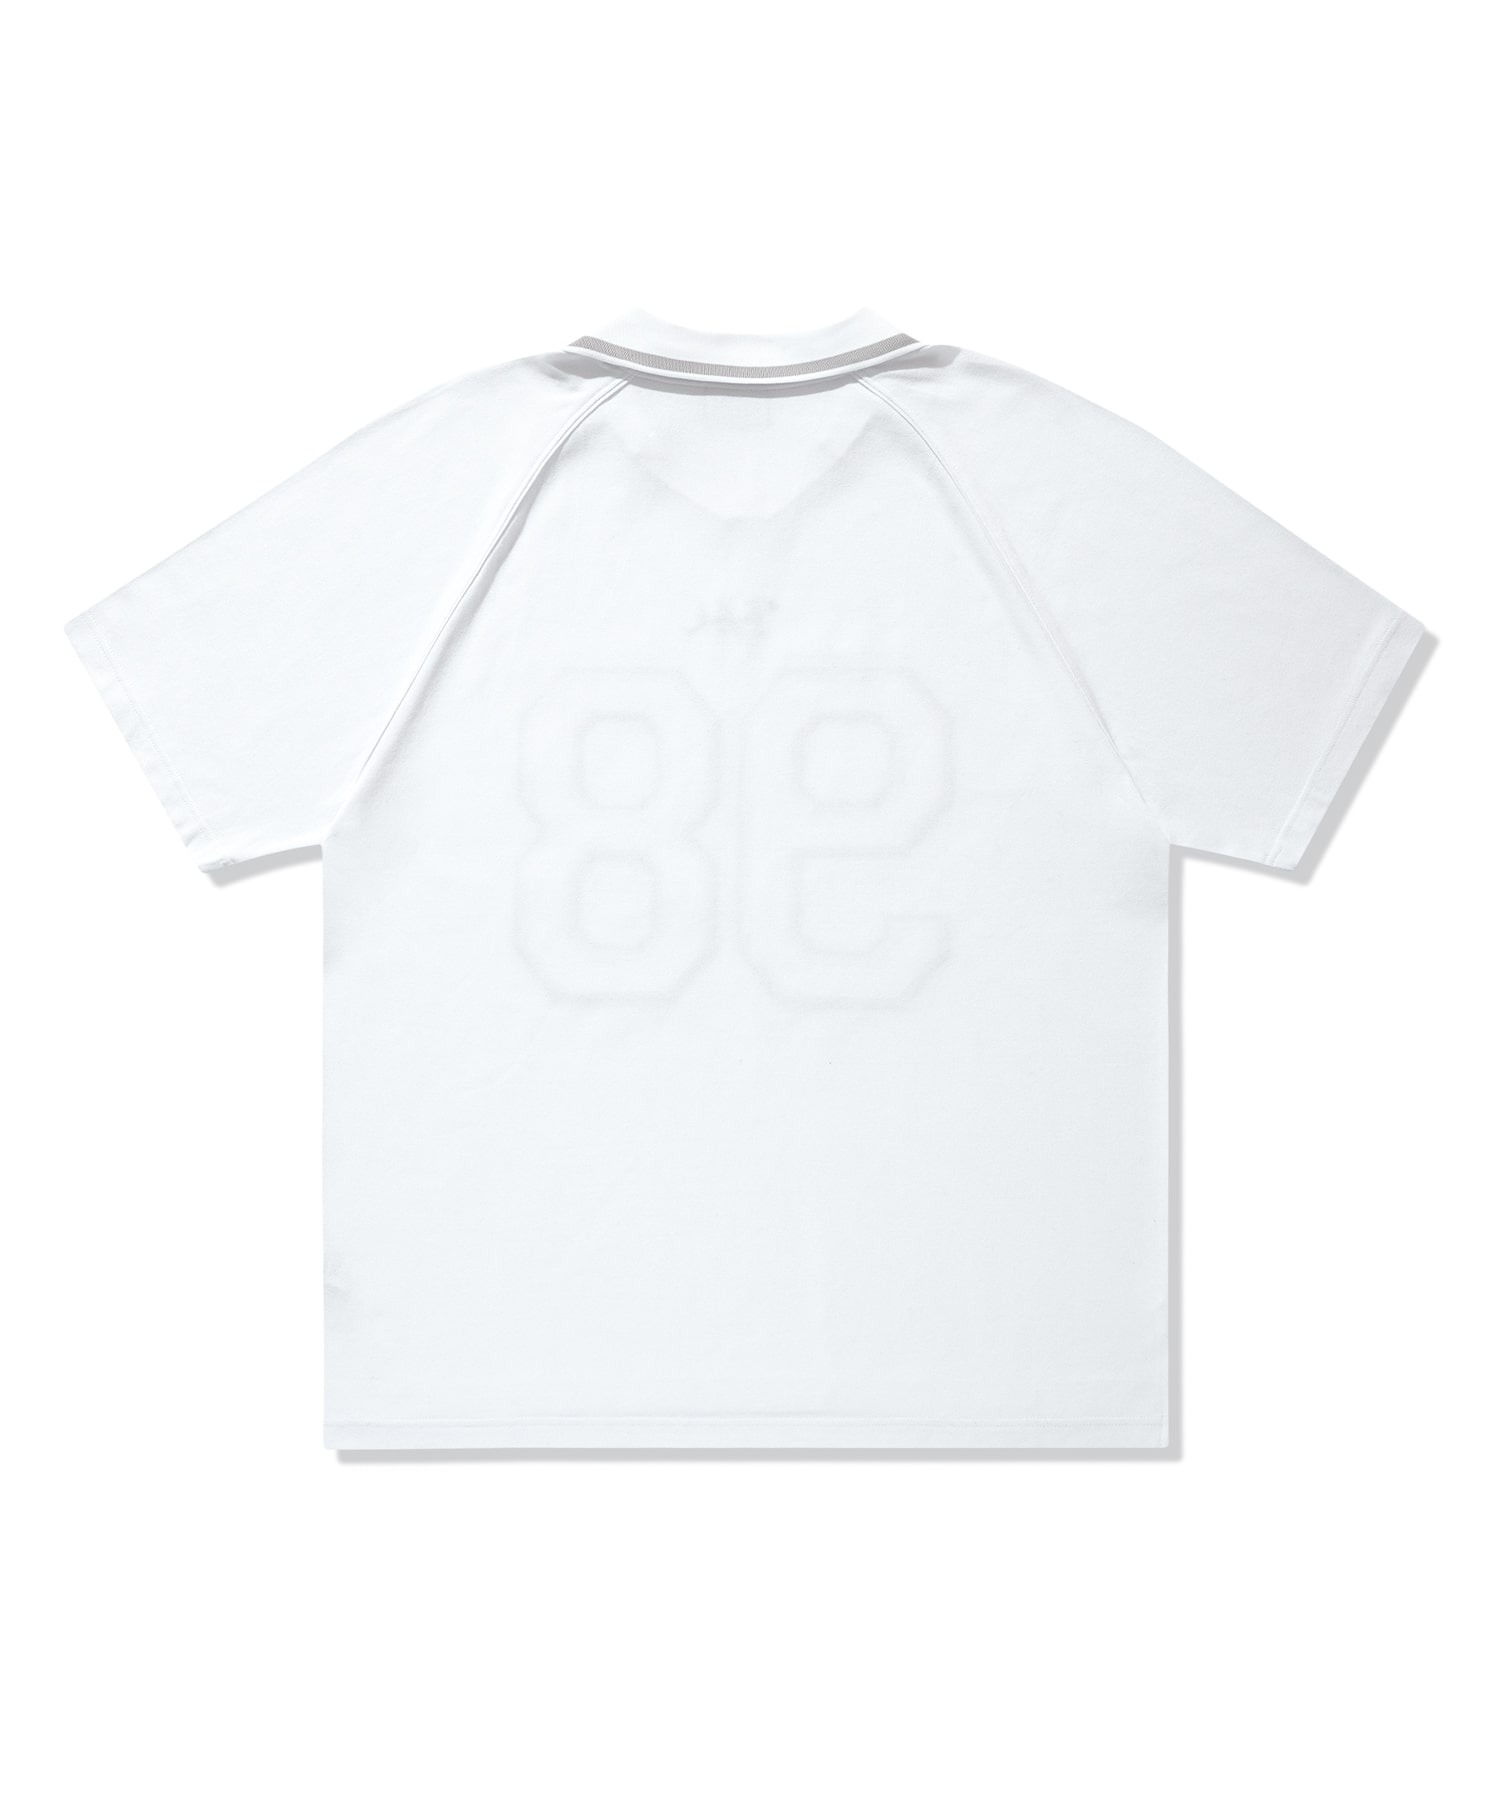 98 유니폼 라인 파이핑 피케 티셔츠 화이트